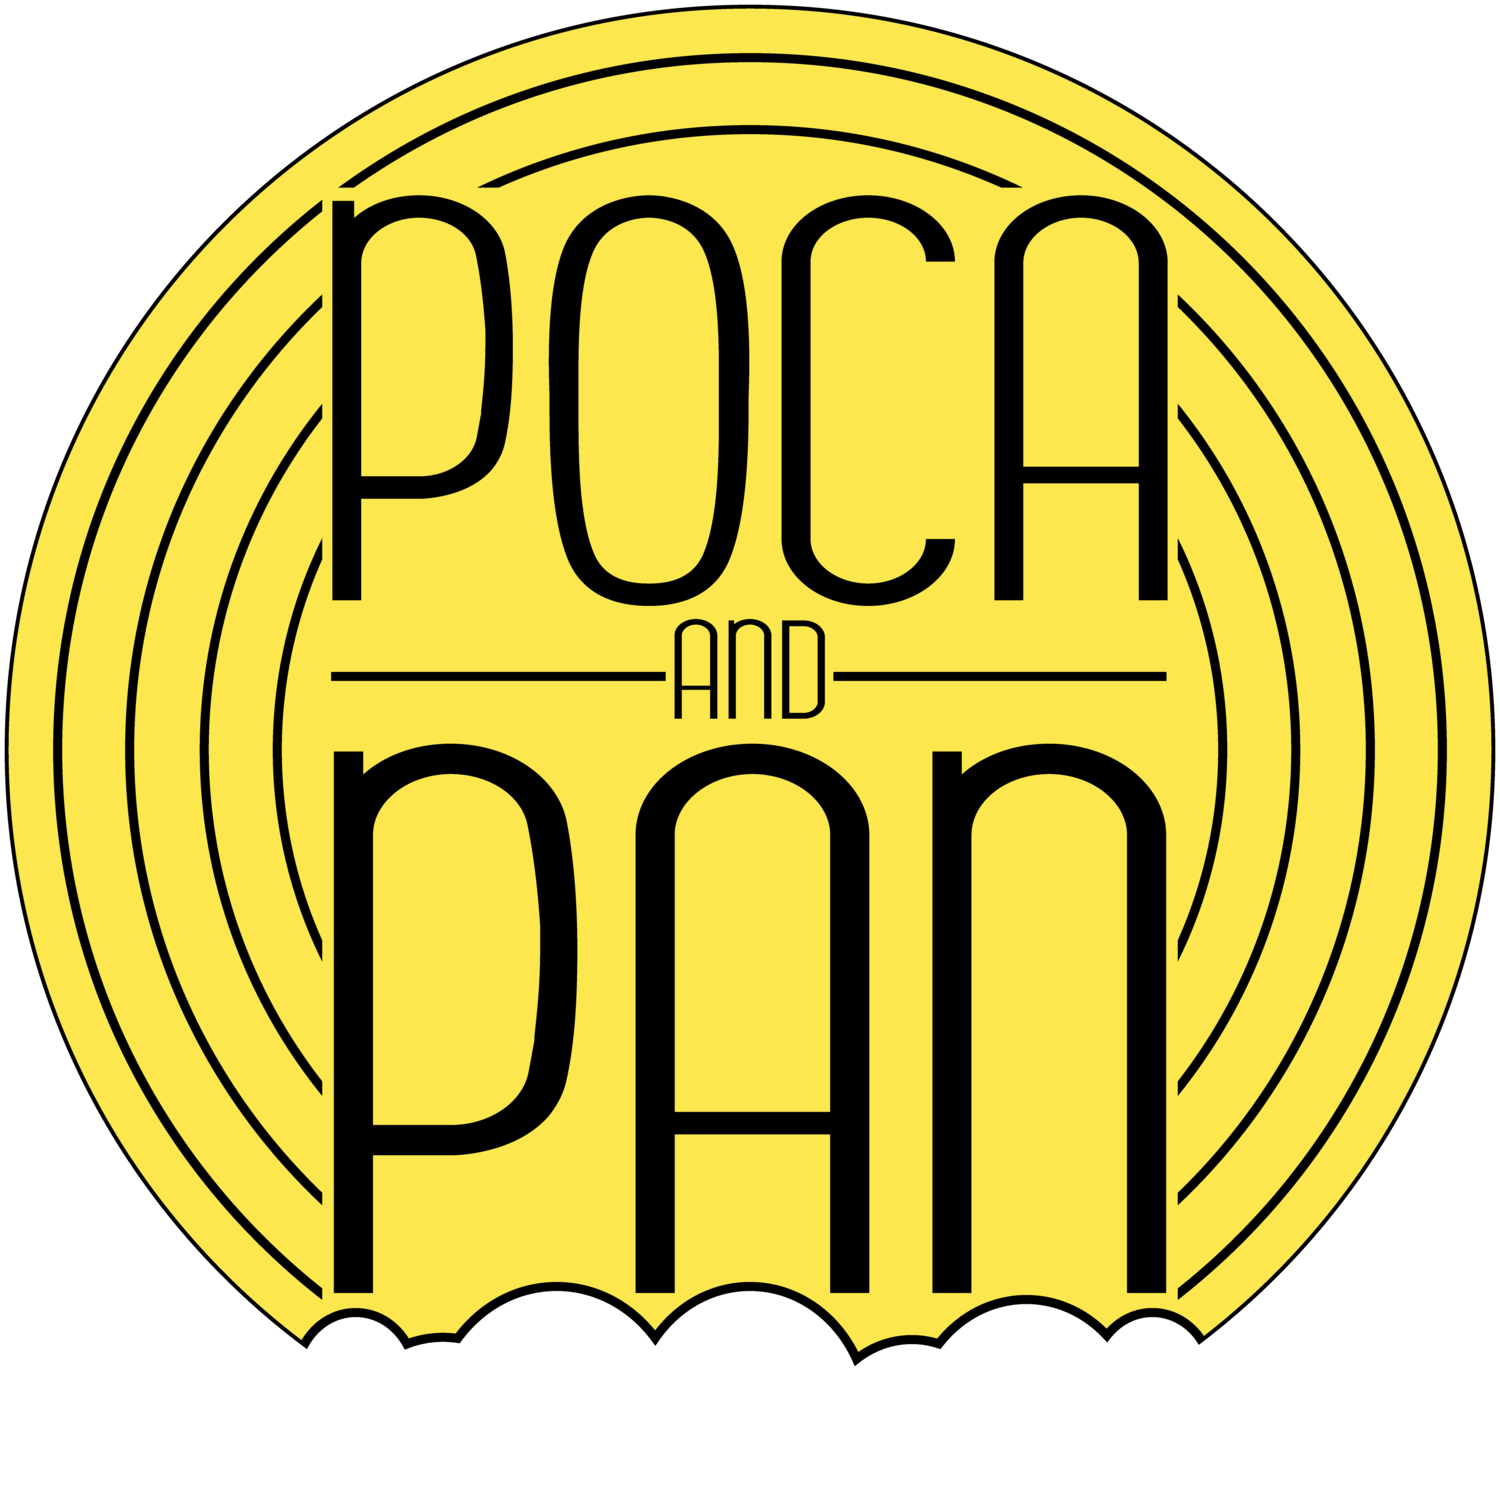 Poca and Pan